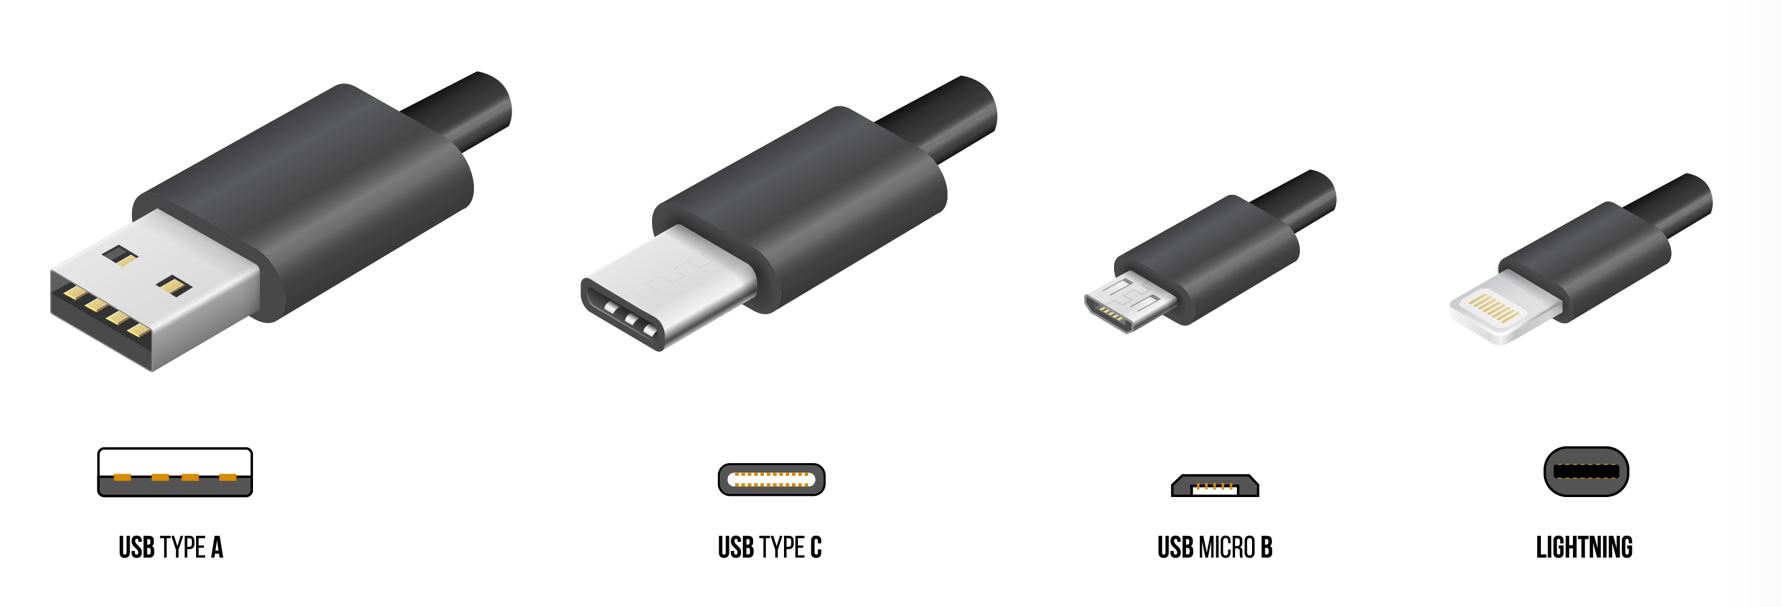 Conexiones USB más comunes